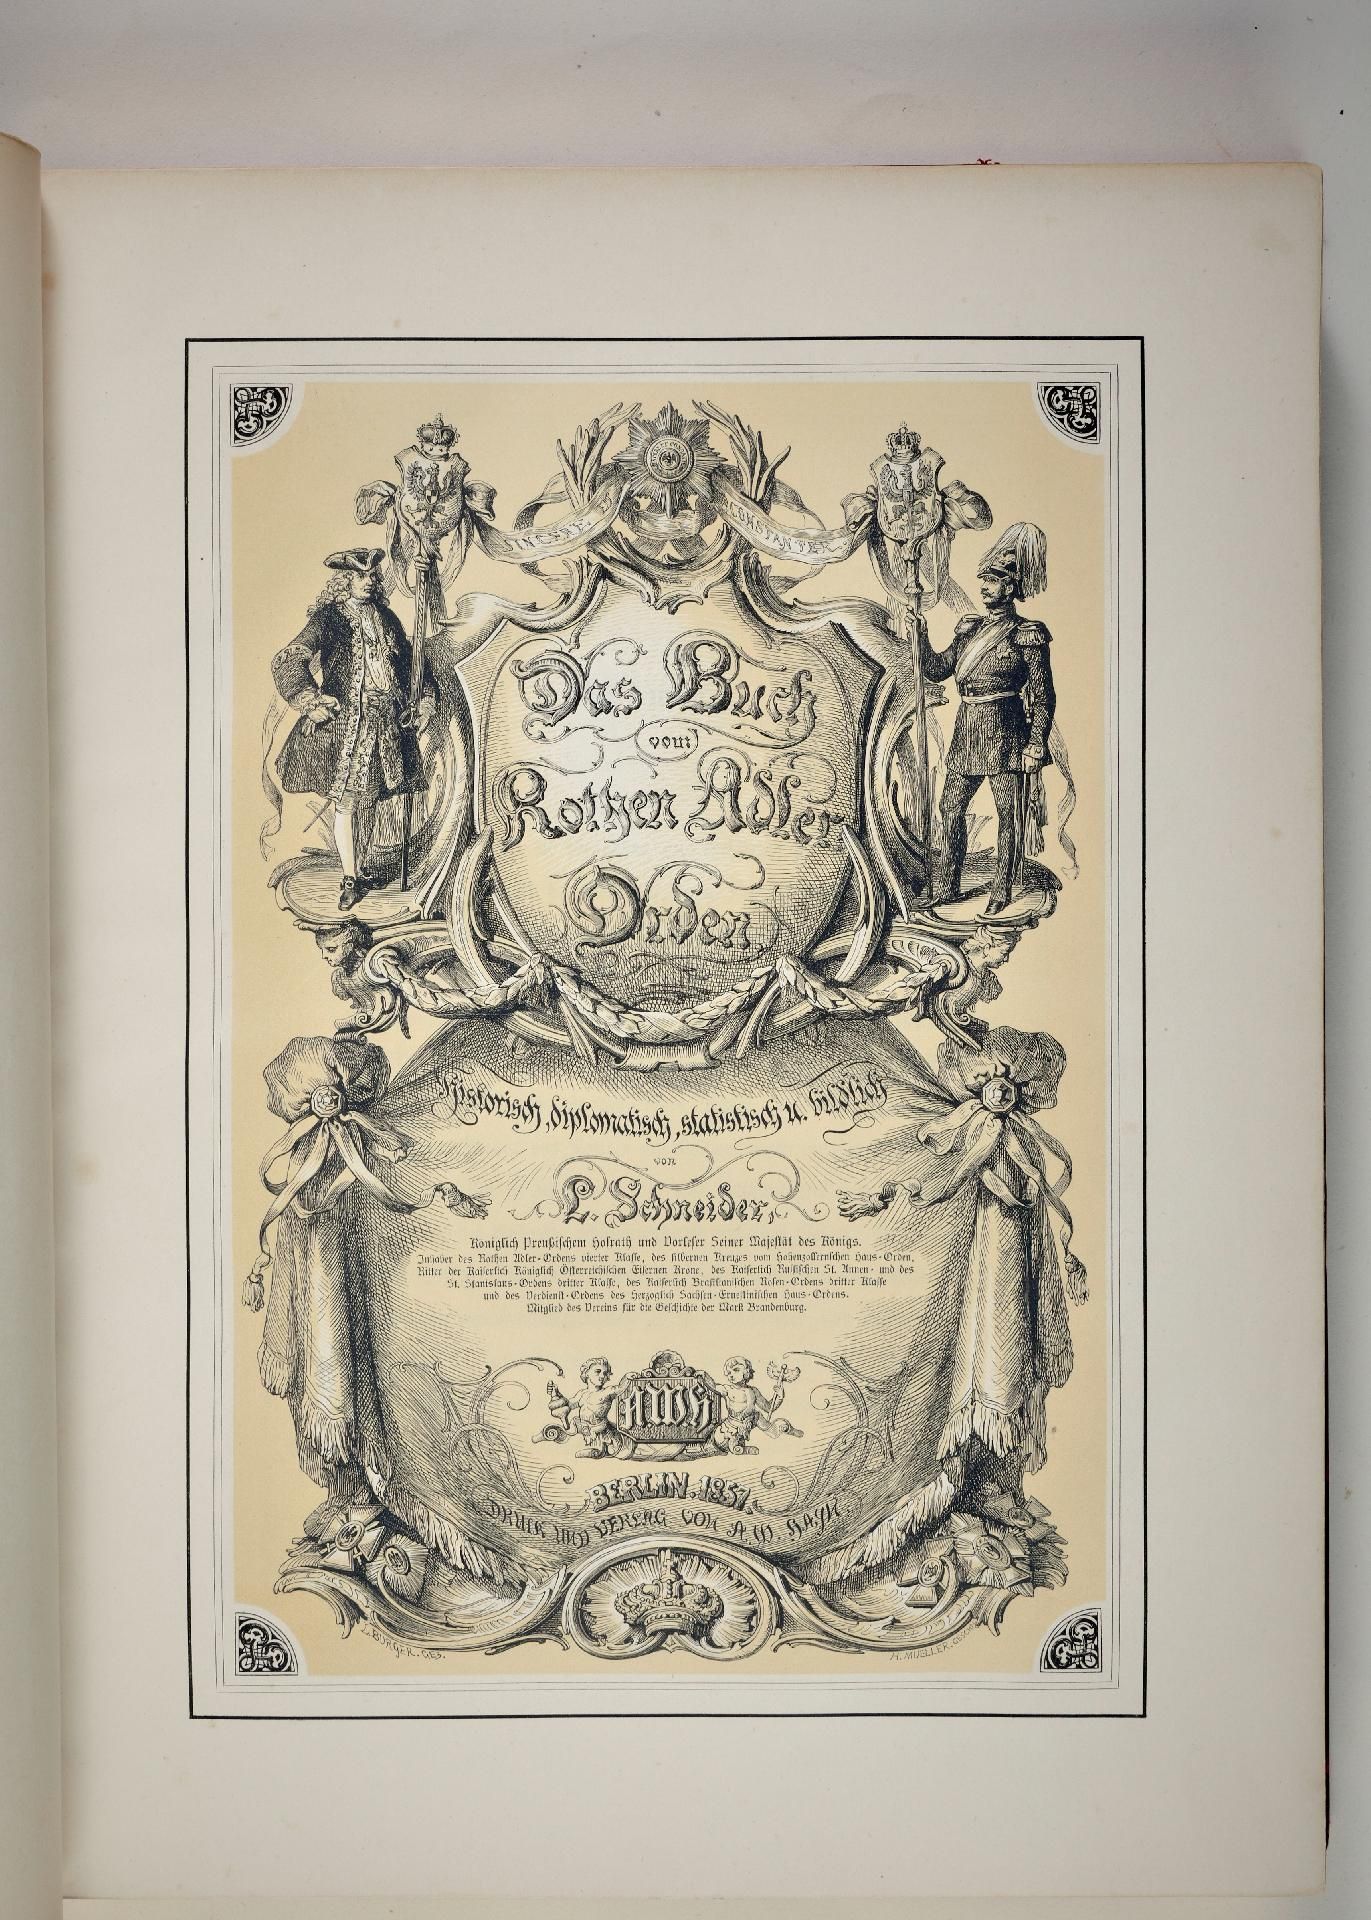 Kingdom of Prussia : Prussia: L. Schneider - Das Buch vom Rothen Adler Orden, Berlin 1857. - Image 2 of 2